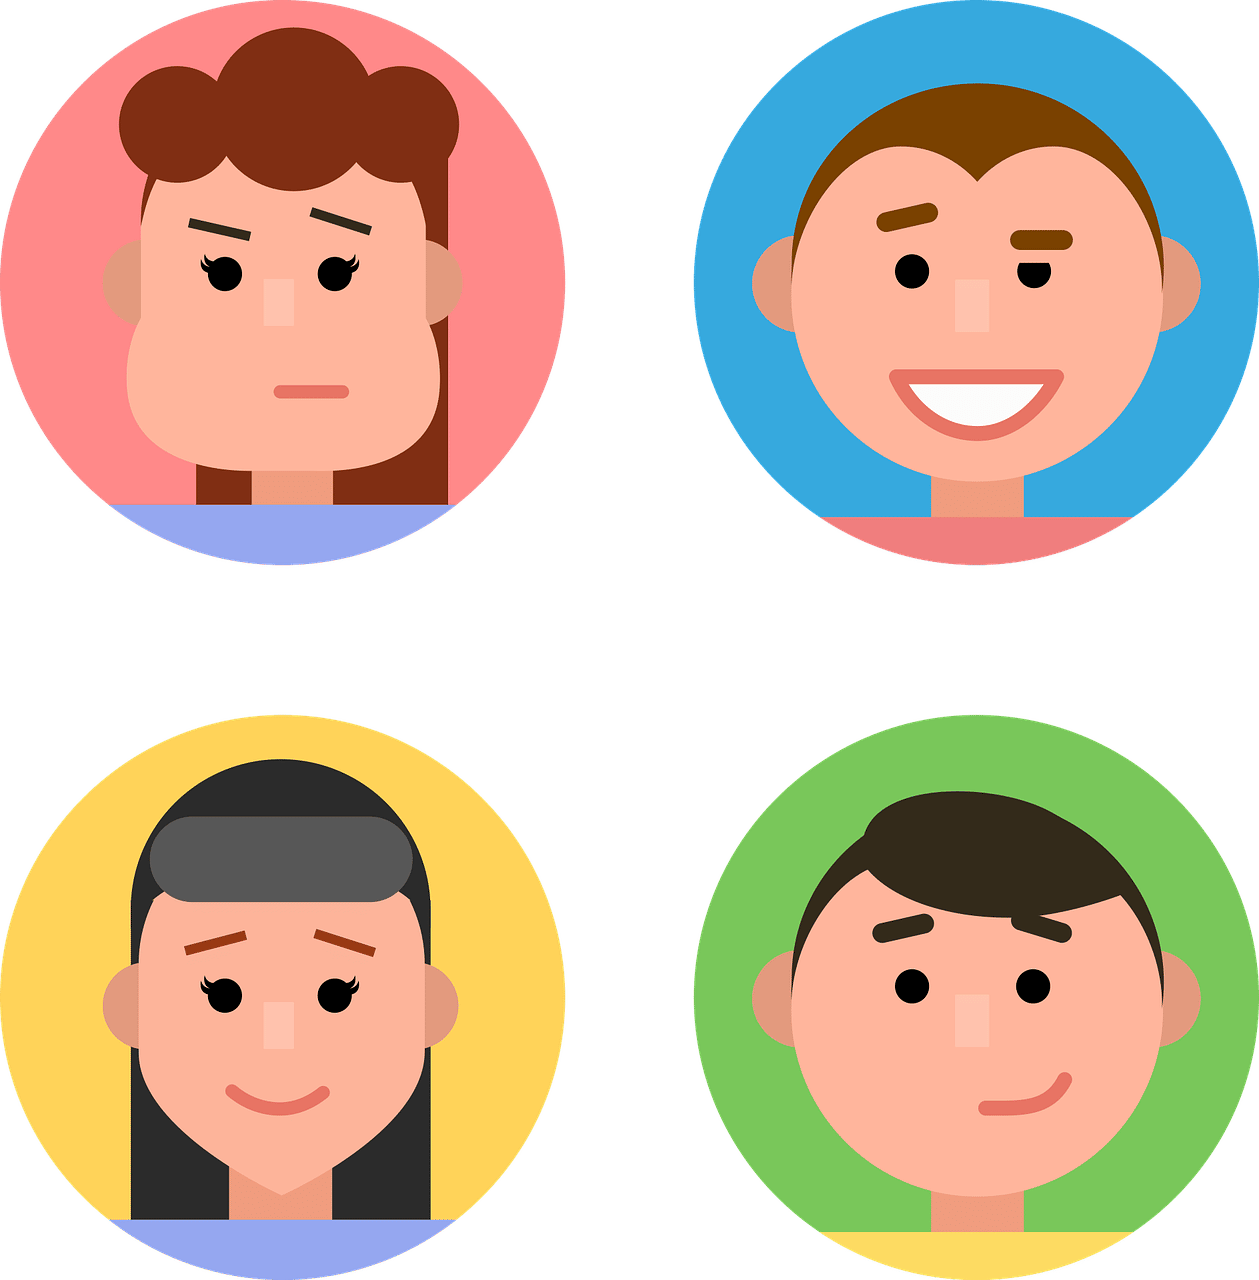 Picrew – Guía para crear tu avatar personalizado